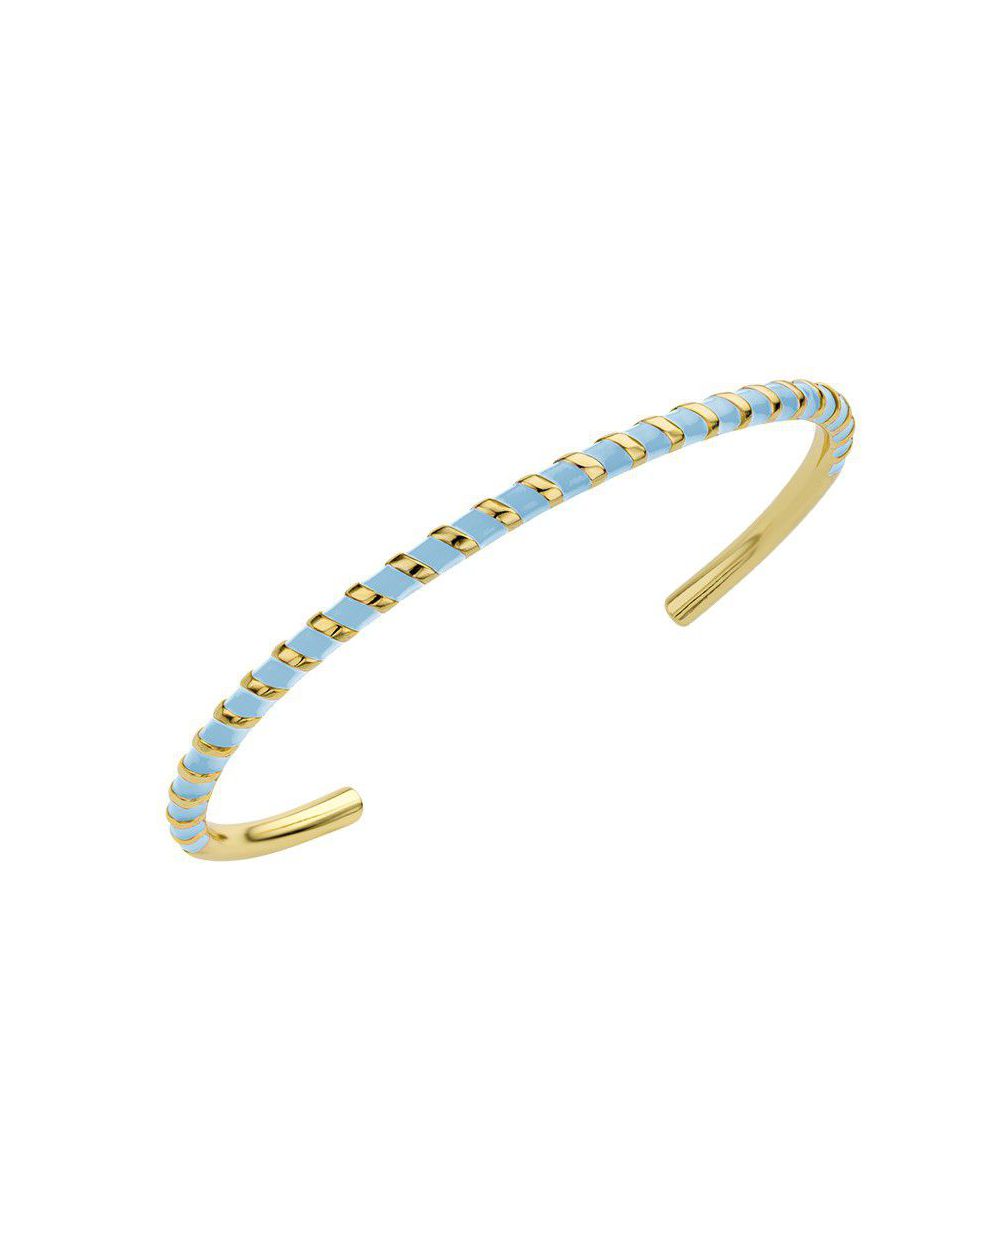 Bracelet MYA BAY - Blue Candy - BR-246 - Bijoux Mya Bay